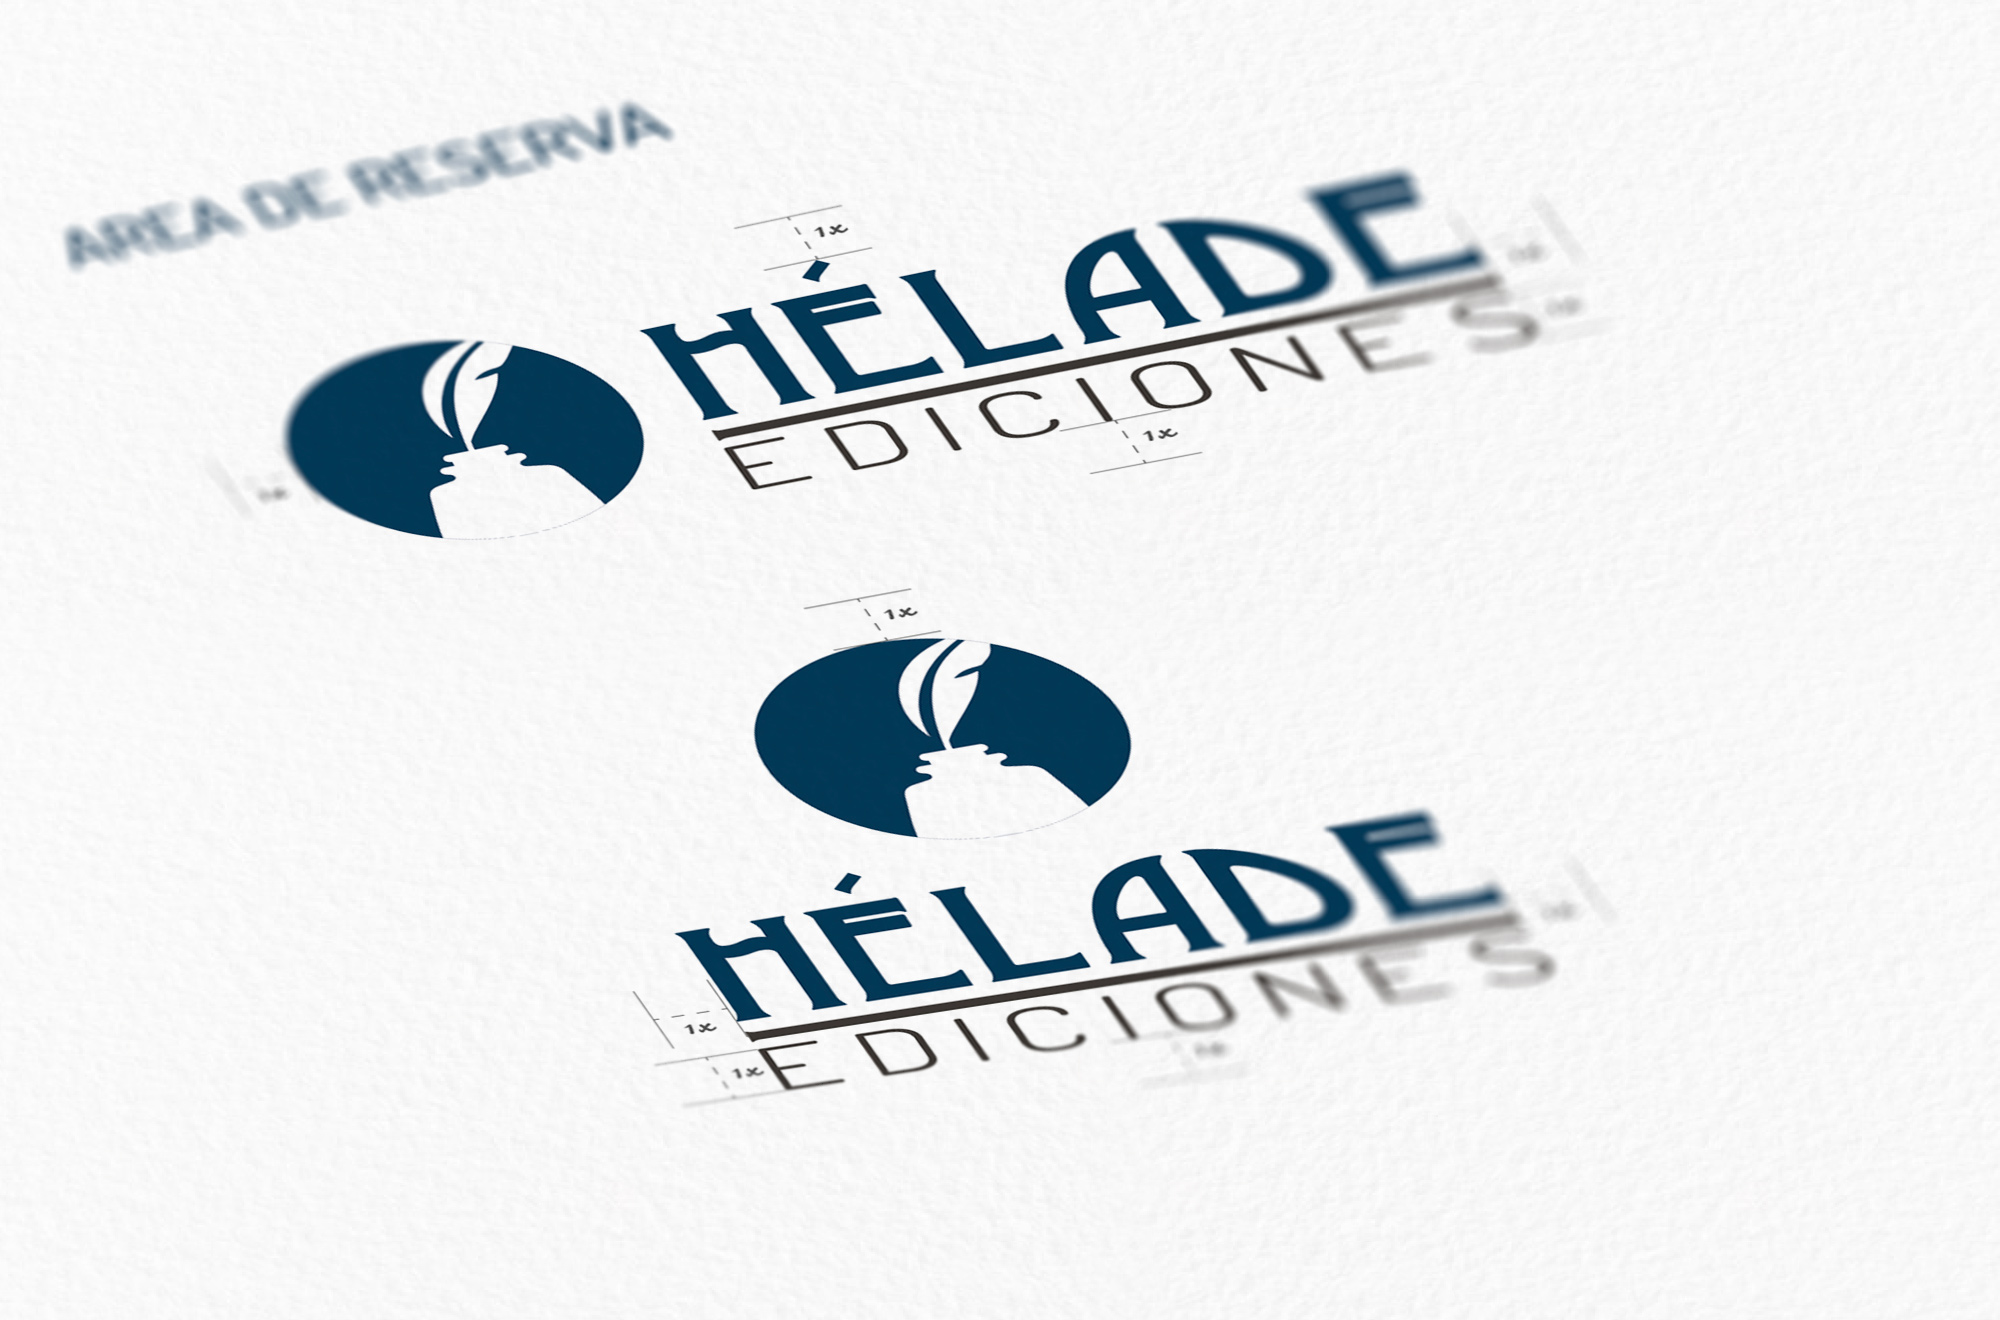 Hélade Ediciones